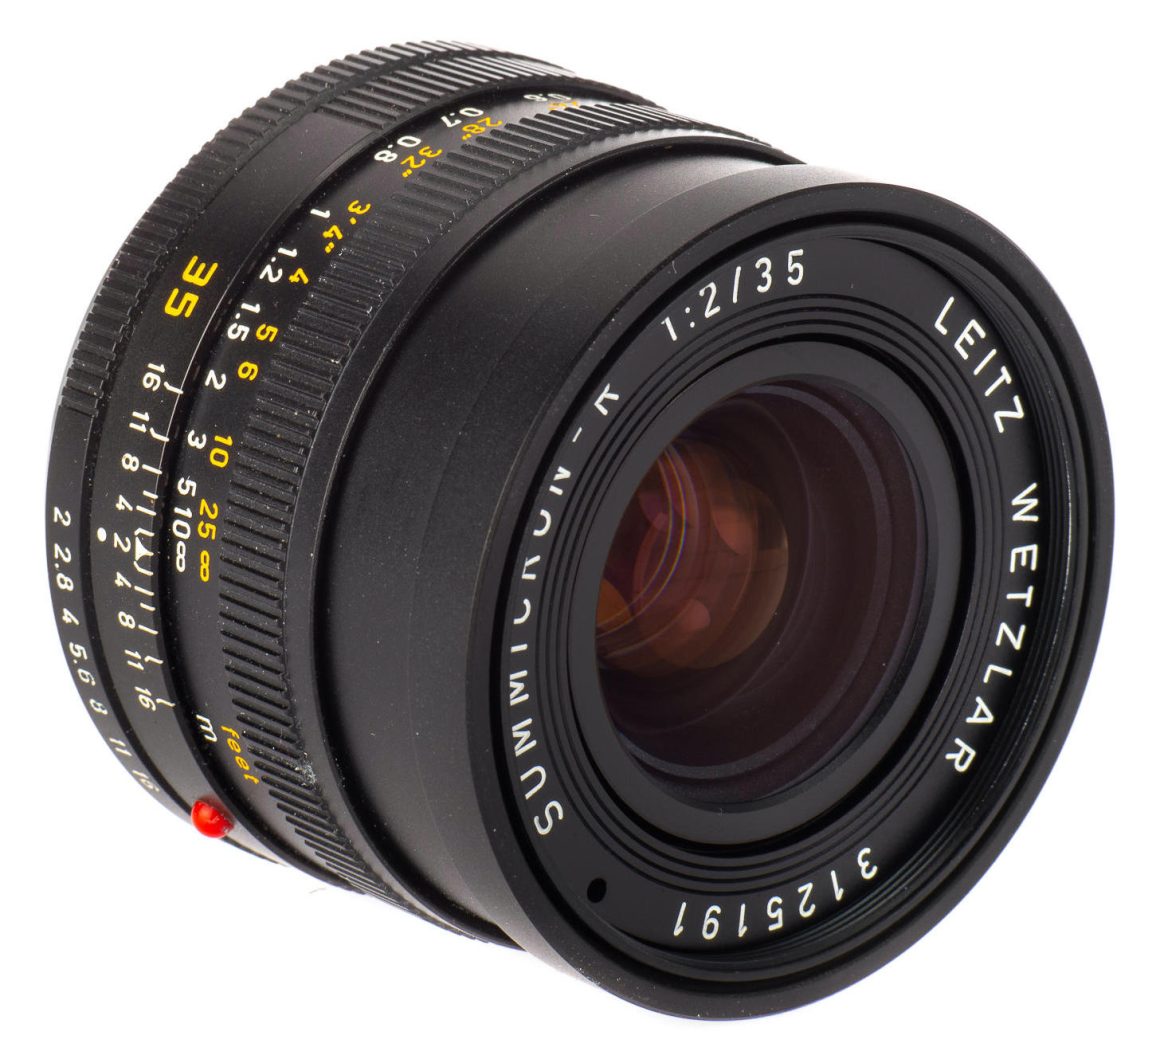 Leitz Wetzlar / Leica SUMMICRON-R 35mm F/2 [II] | LENS-DB.COM